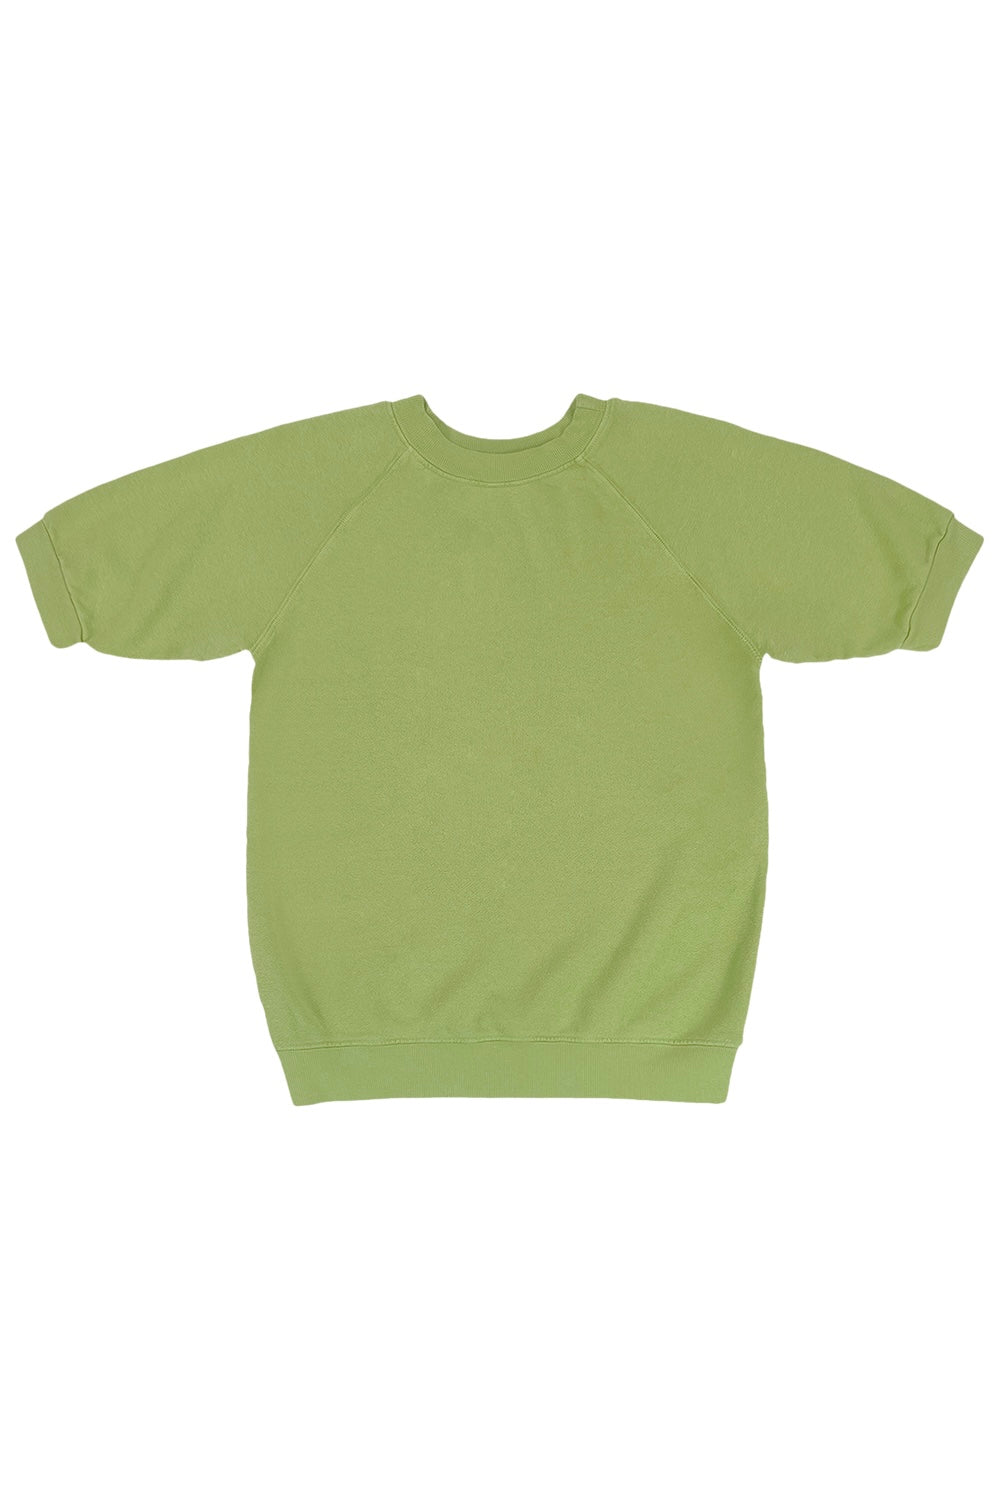 Short Sleeve Raglan Fleece Sweatshirt | Jungmaven Hemp Clothing & Accessories / Color: Dark Matcha